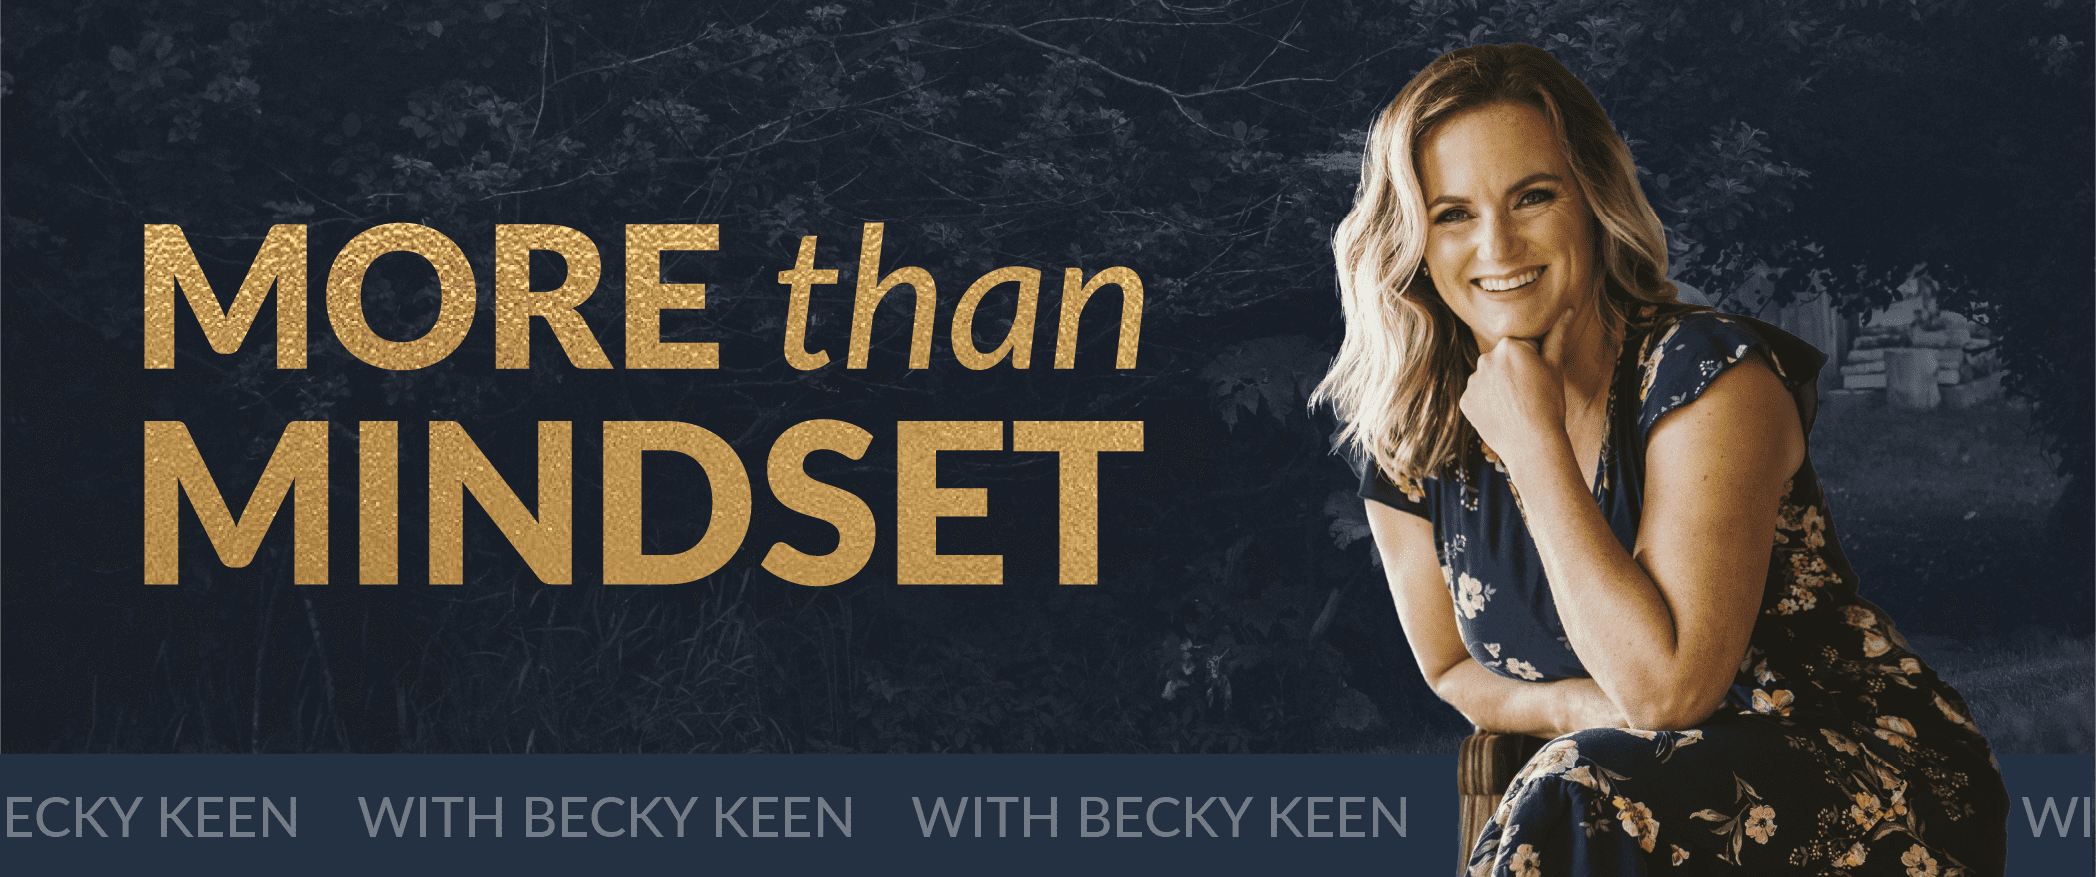 Becky Keen – More than Mindset (1)